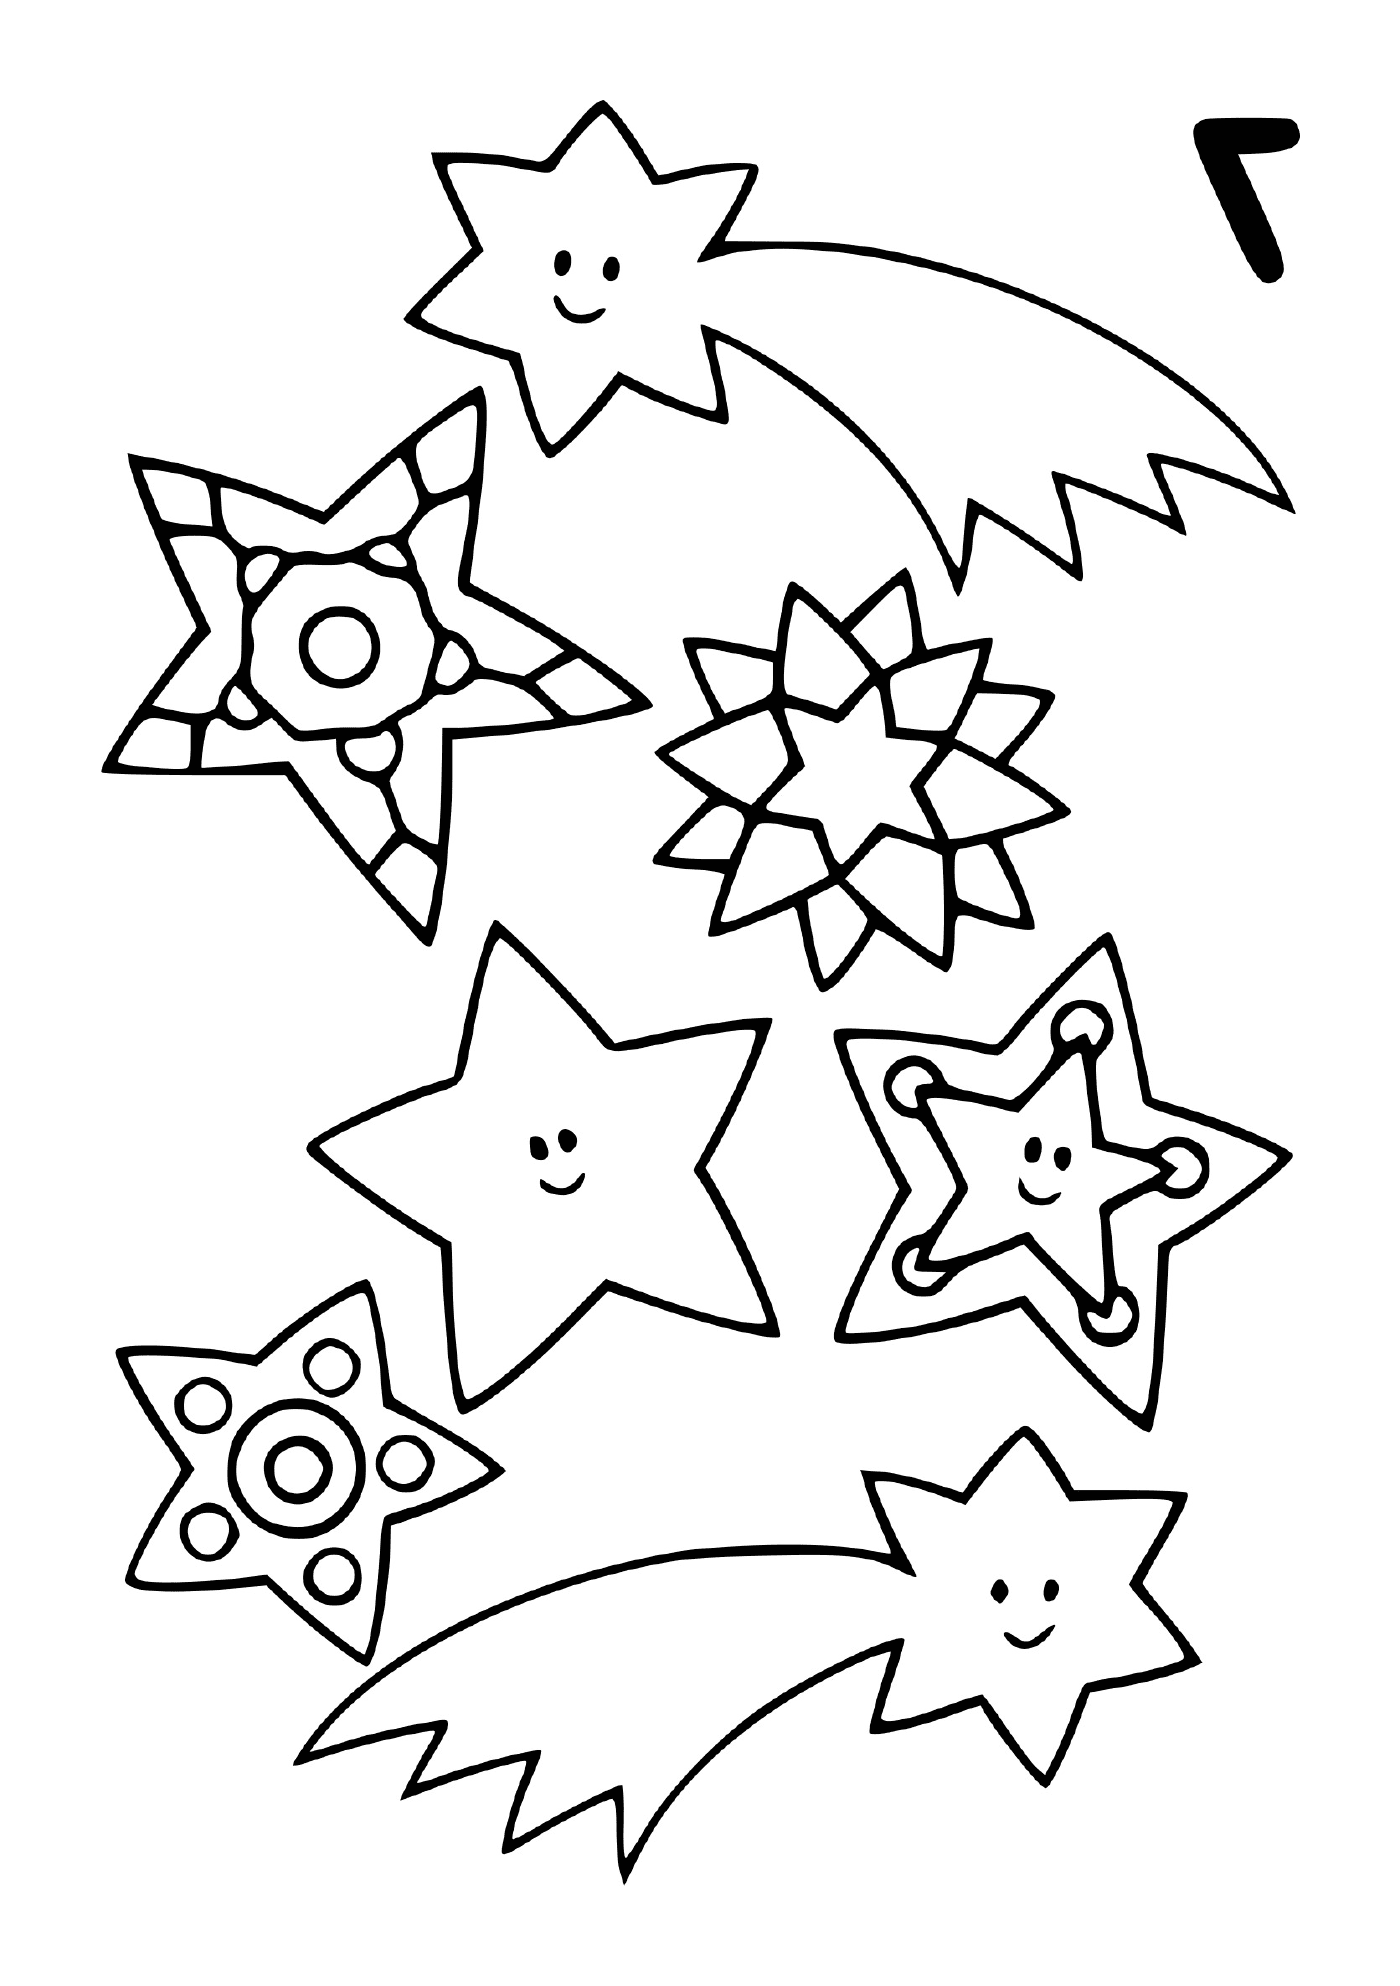  Ряд падающих звёзд в разных формах 